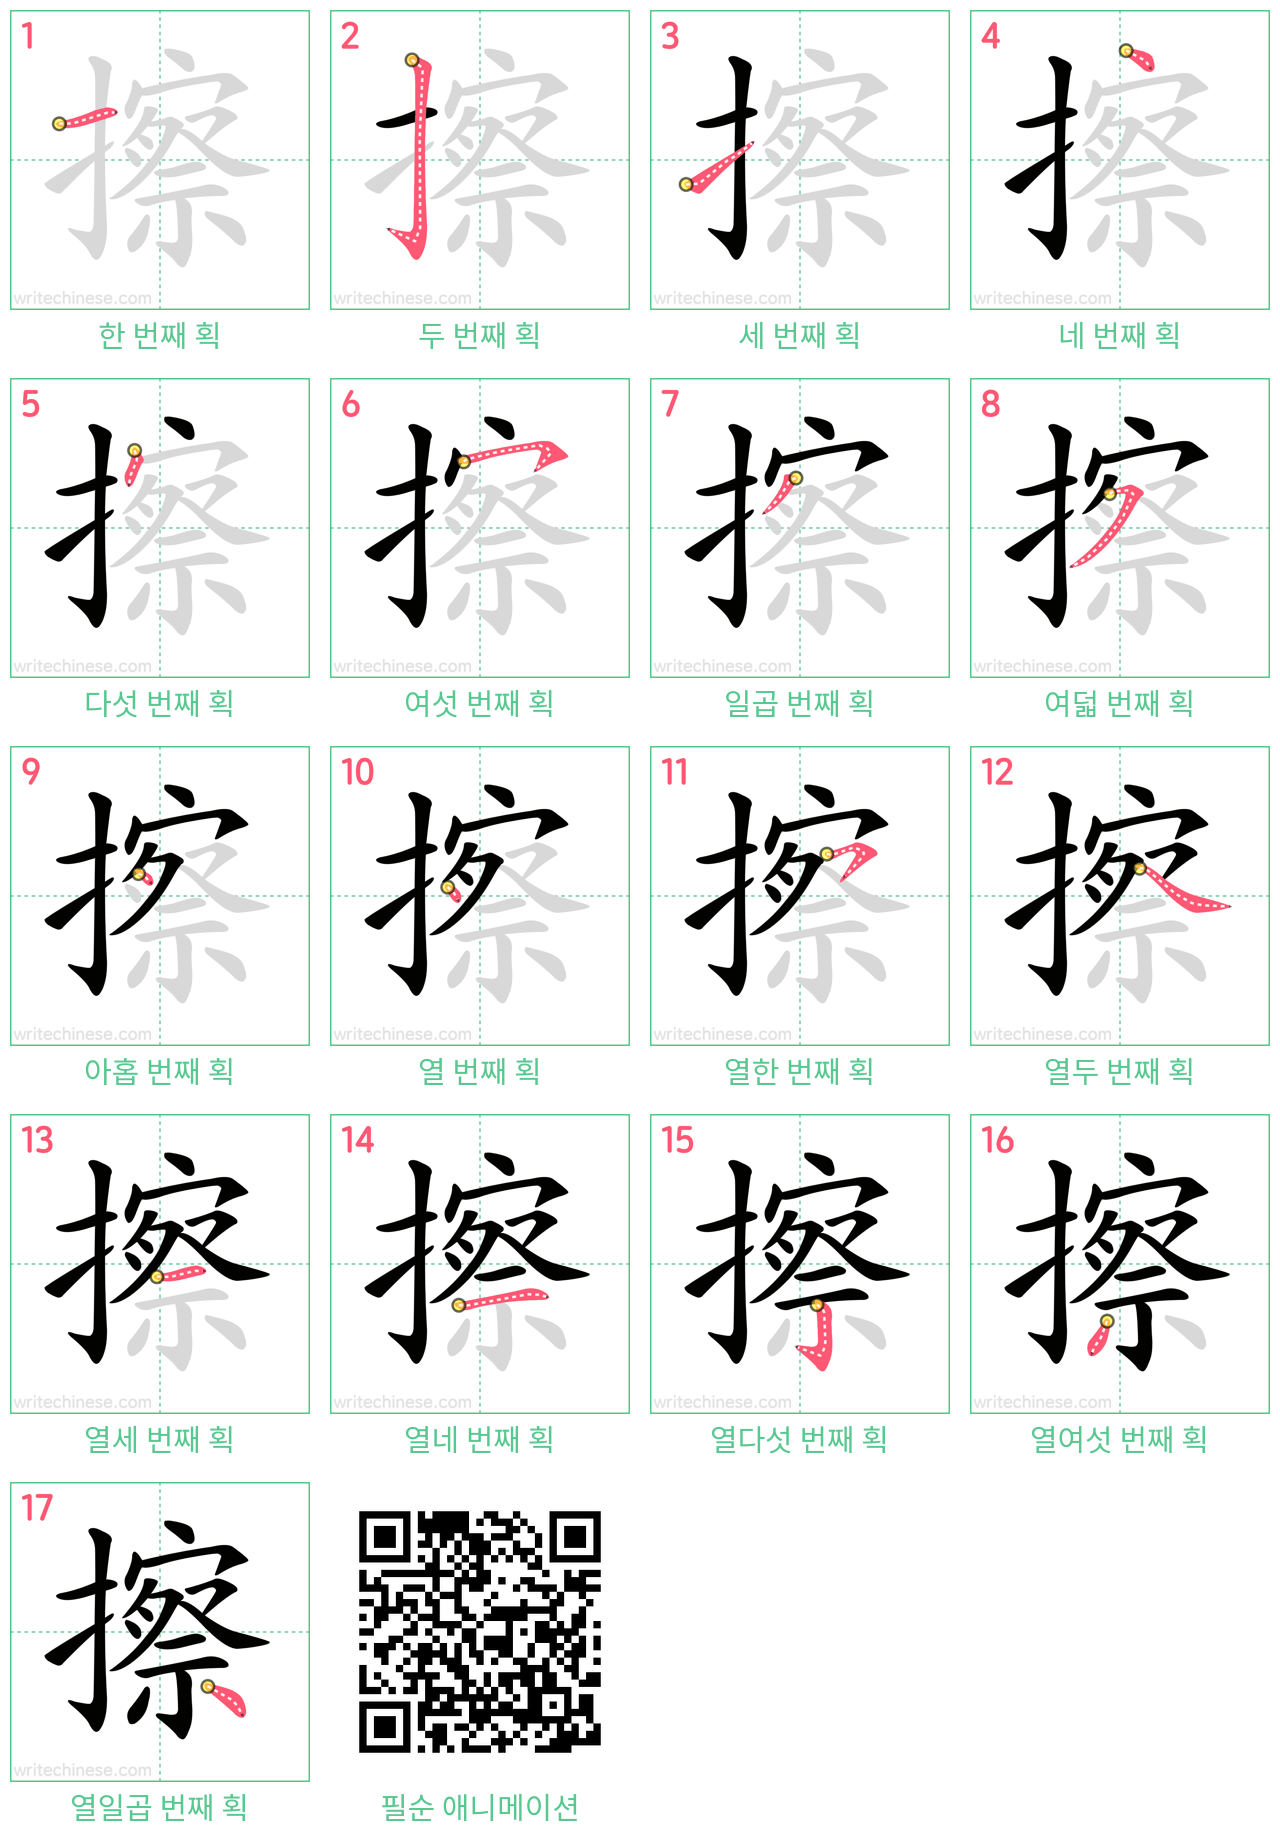 擦 step-by-step stroke order diagrams